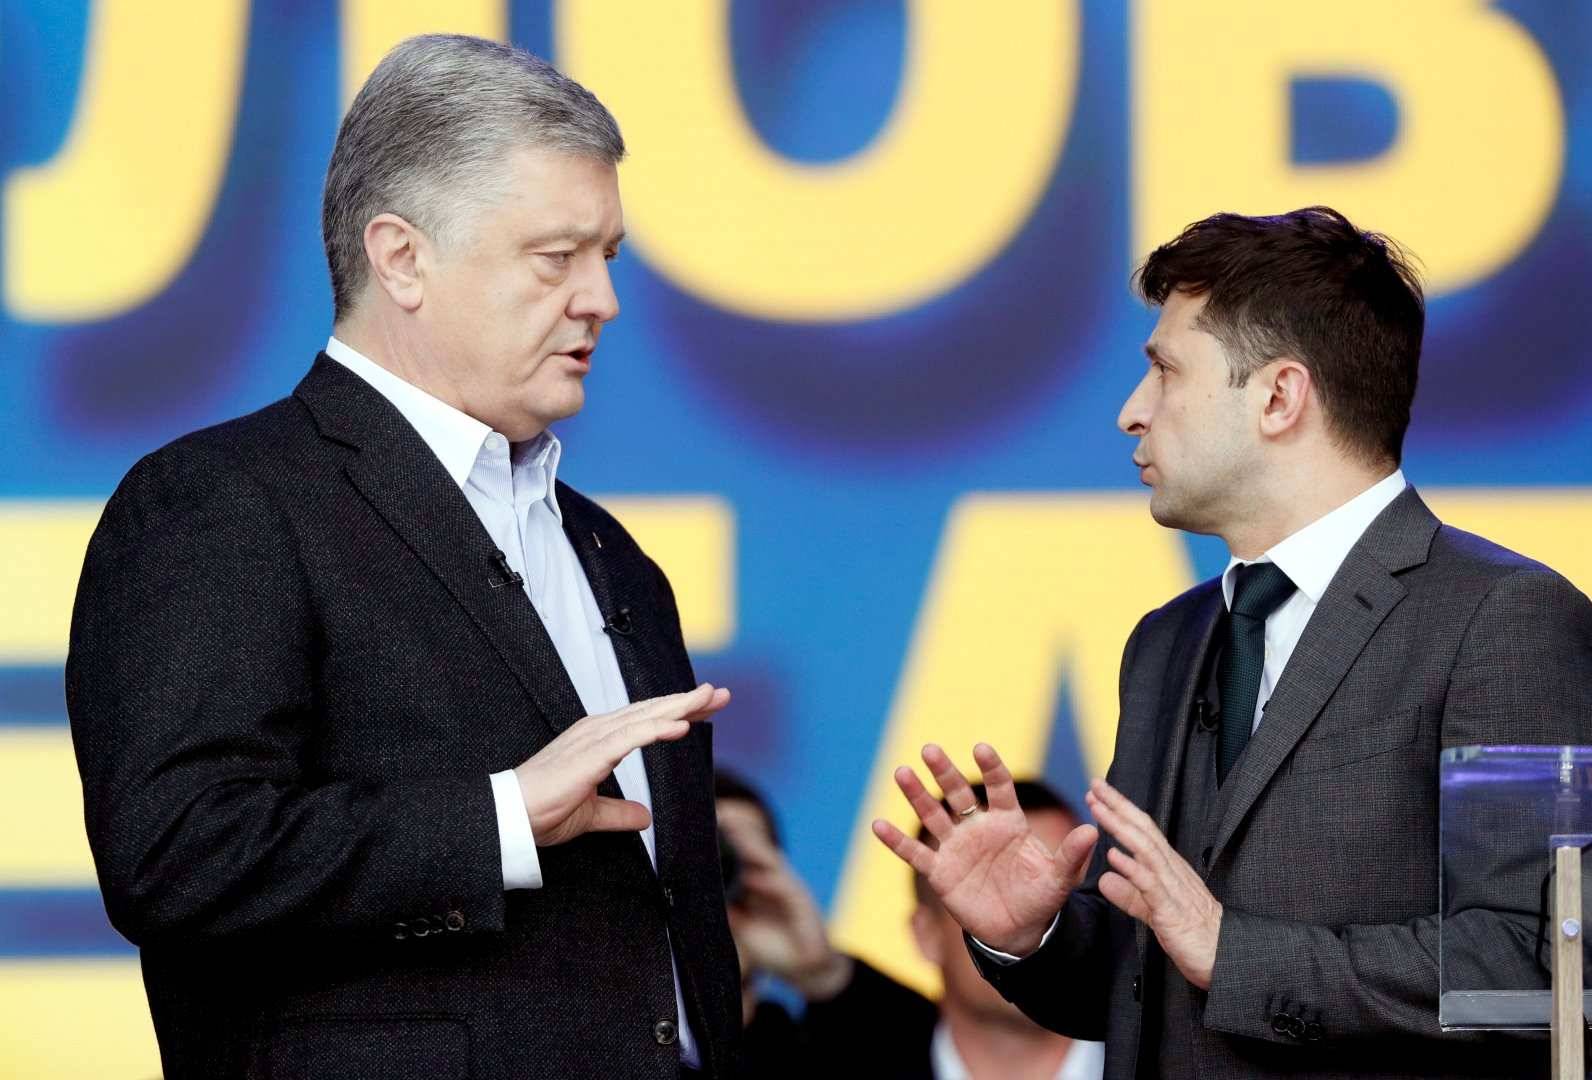 Зеленский, Порошенко, Медведчук в лидерах: социологи назвали самых популярных политиков Украины 2021 года